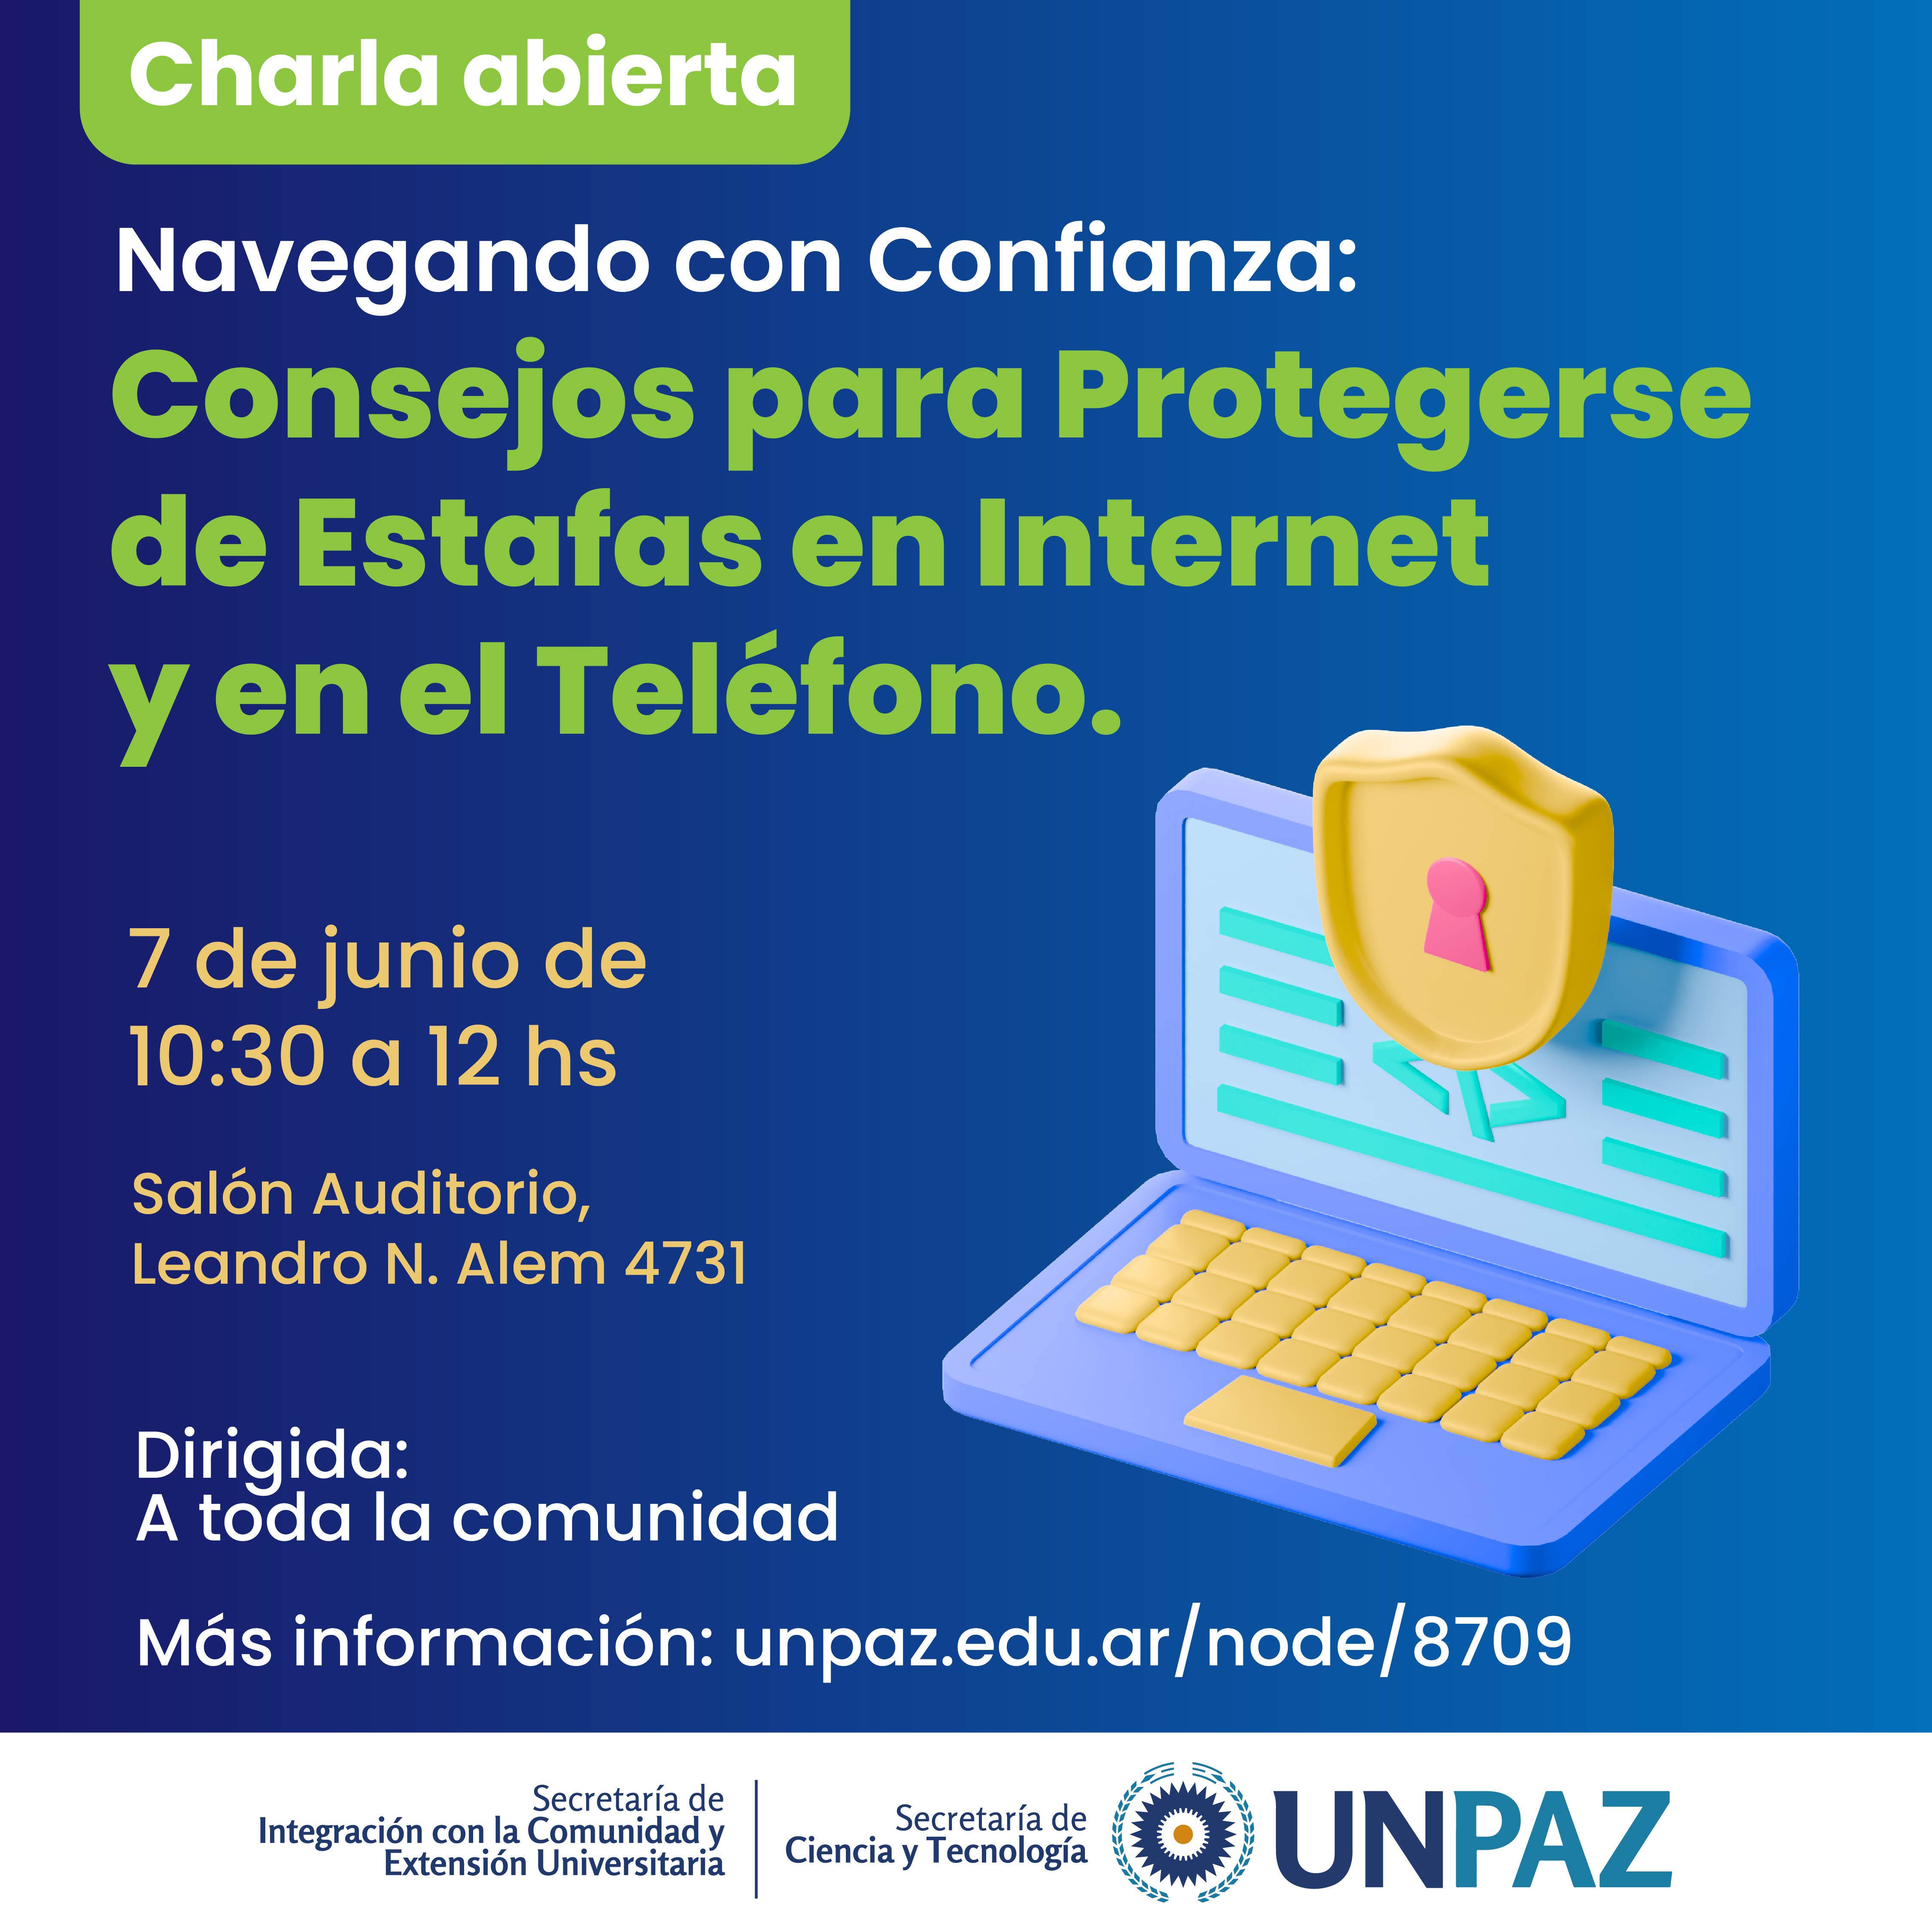 Charla abierta “Navegando con Confianza: Consejos para Protegerse de Estafas en Internet y en el Teléfono” - UNPAZ